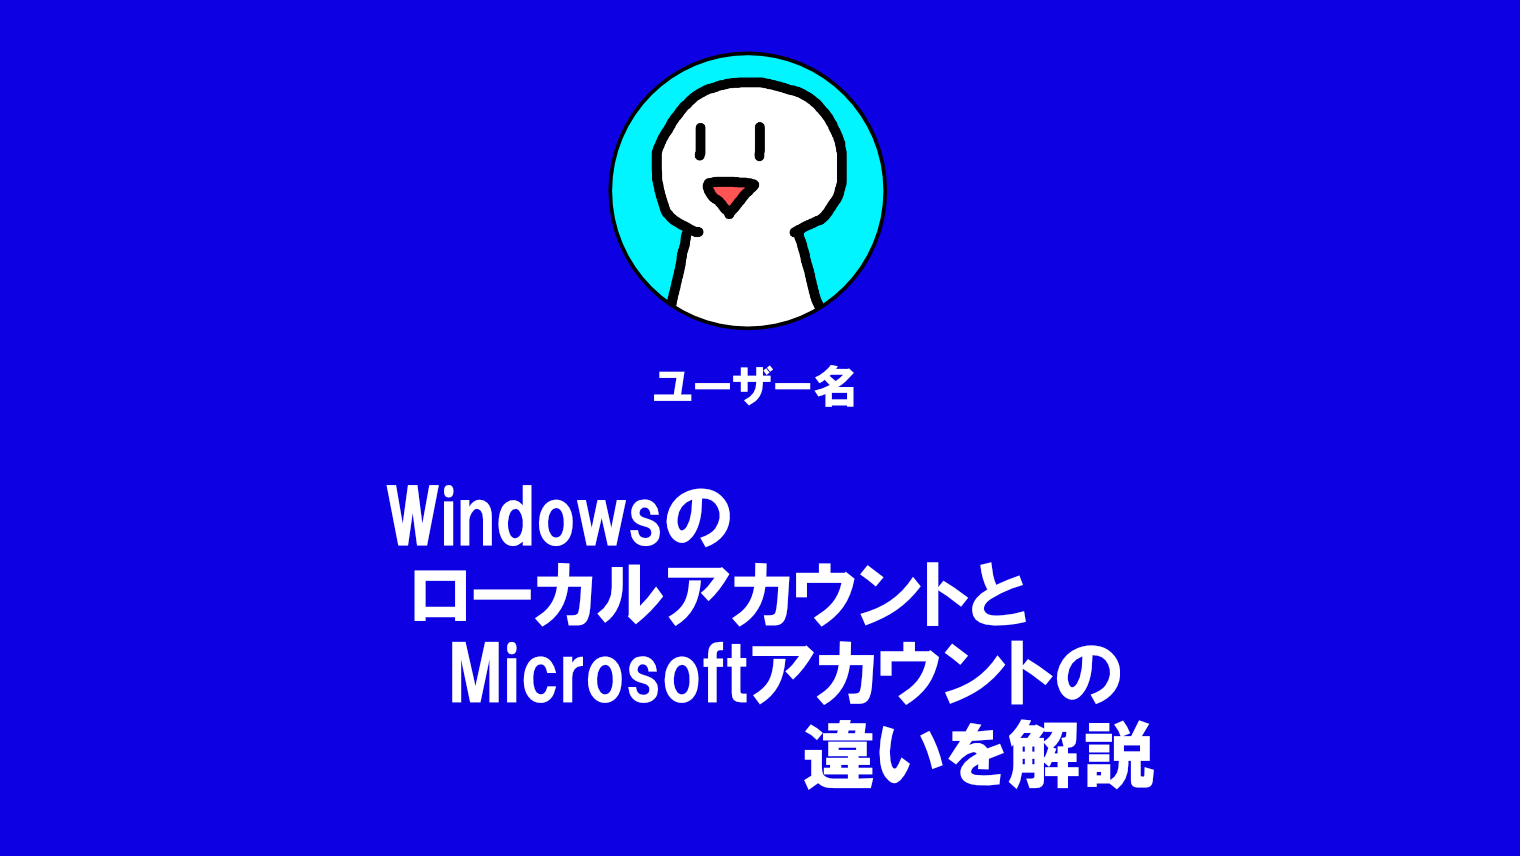 【Windows】ローカルアカウントとMicrosoftアカウントの違いを簡単に解説